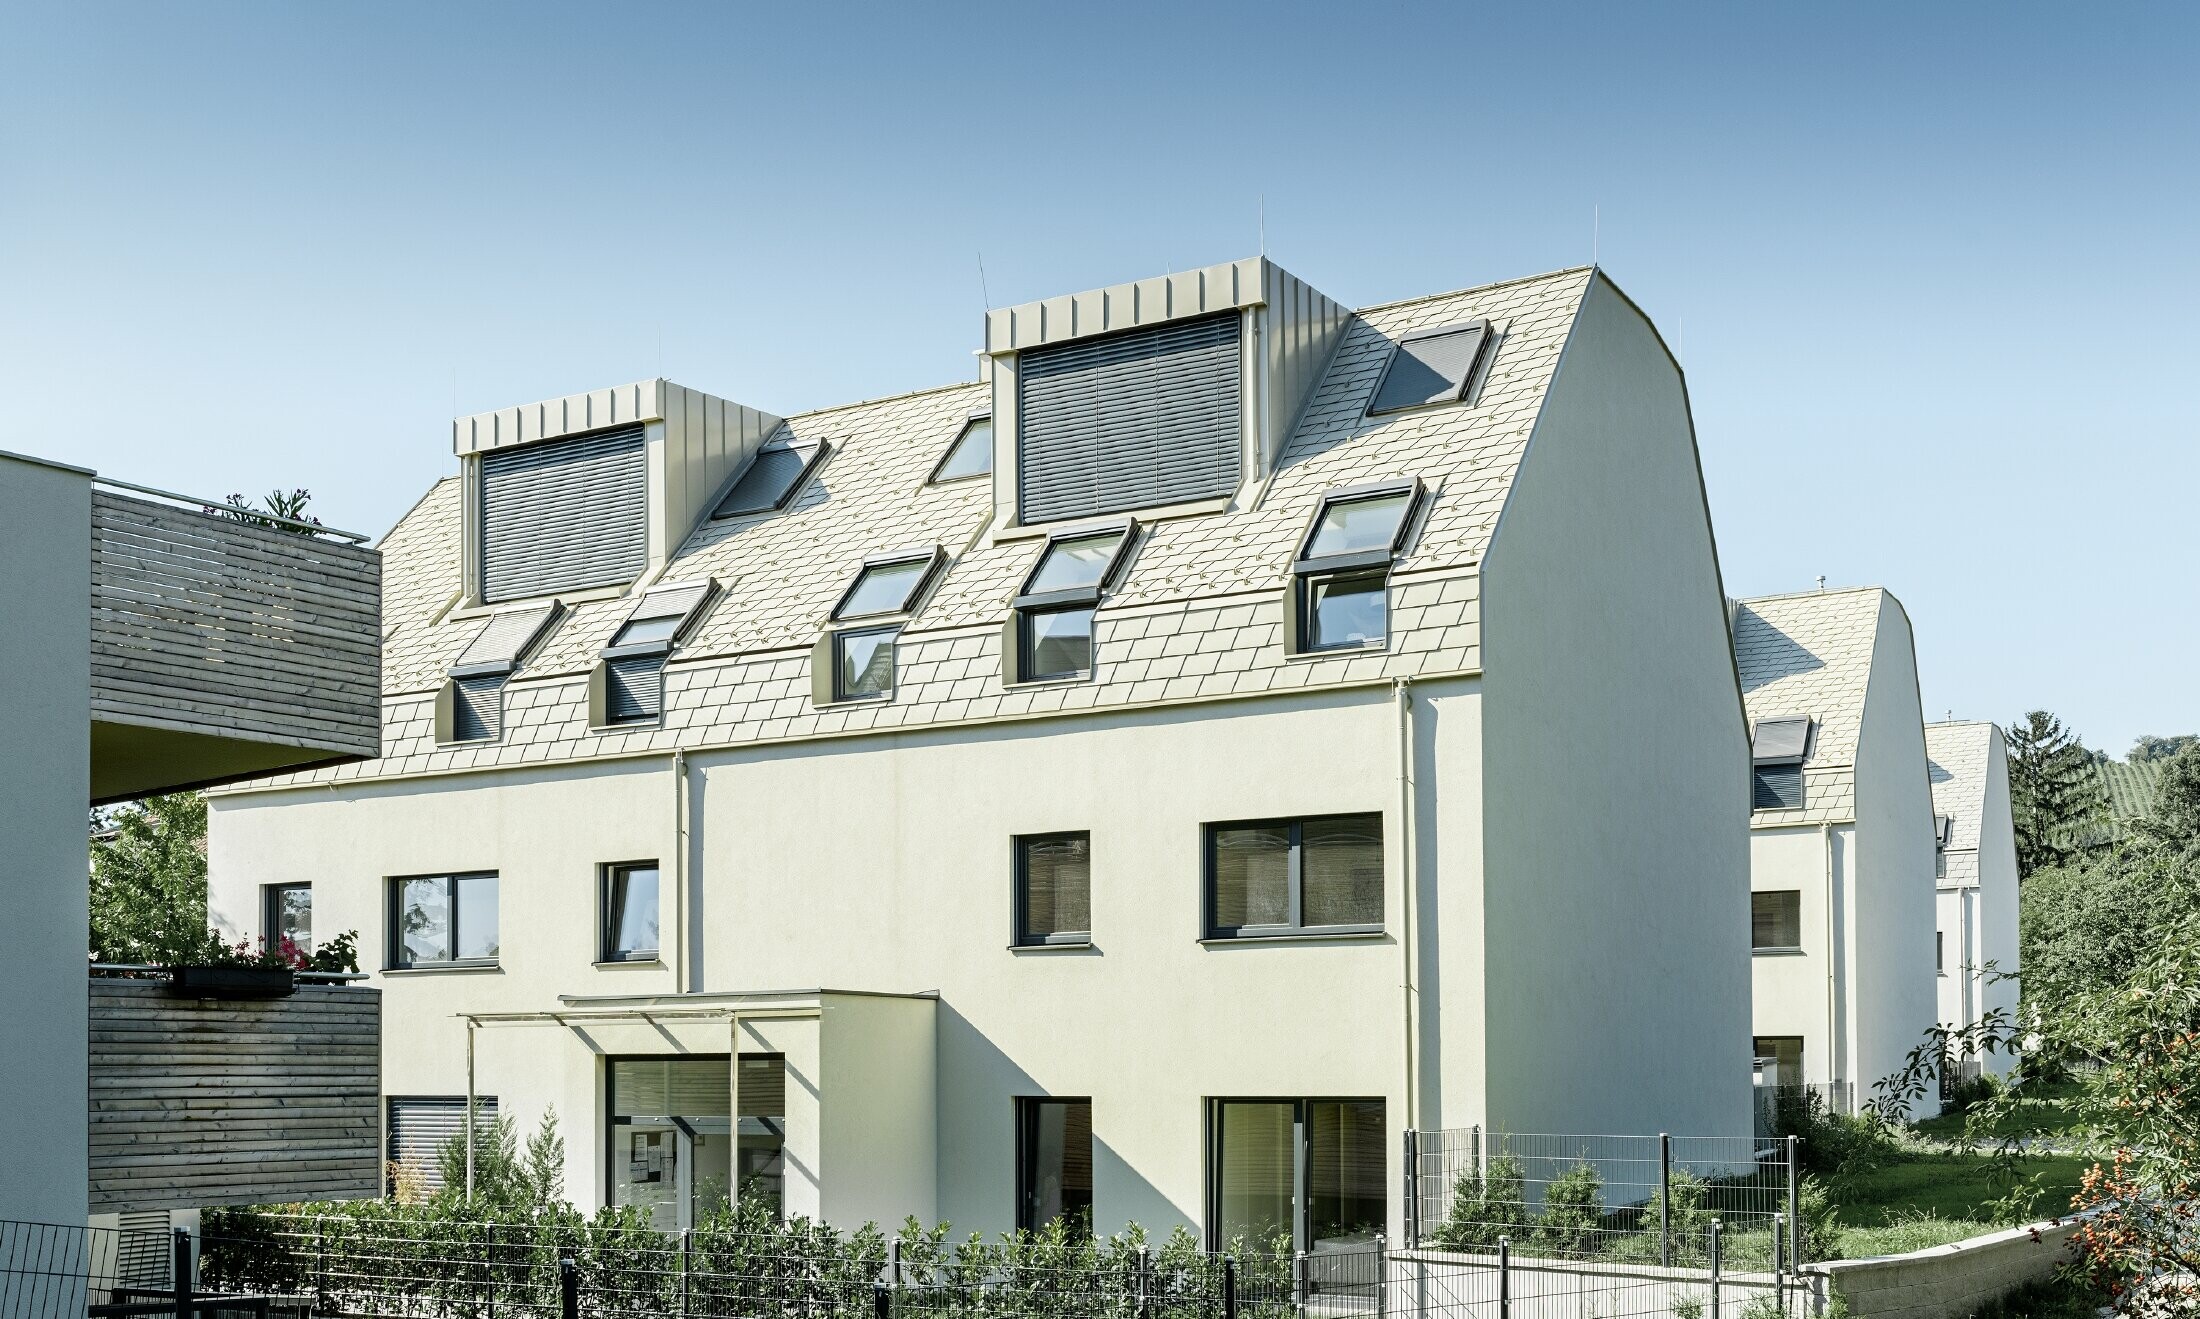 Nový bytový dom s veľkoplošnou hliníkovou strechou a mnohými strešnými oknami